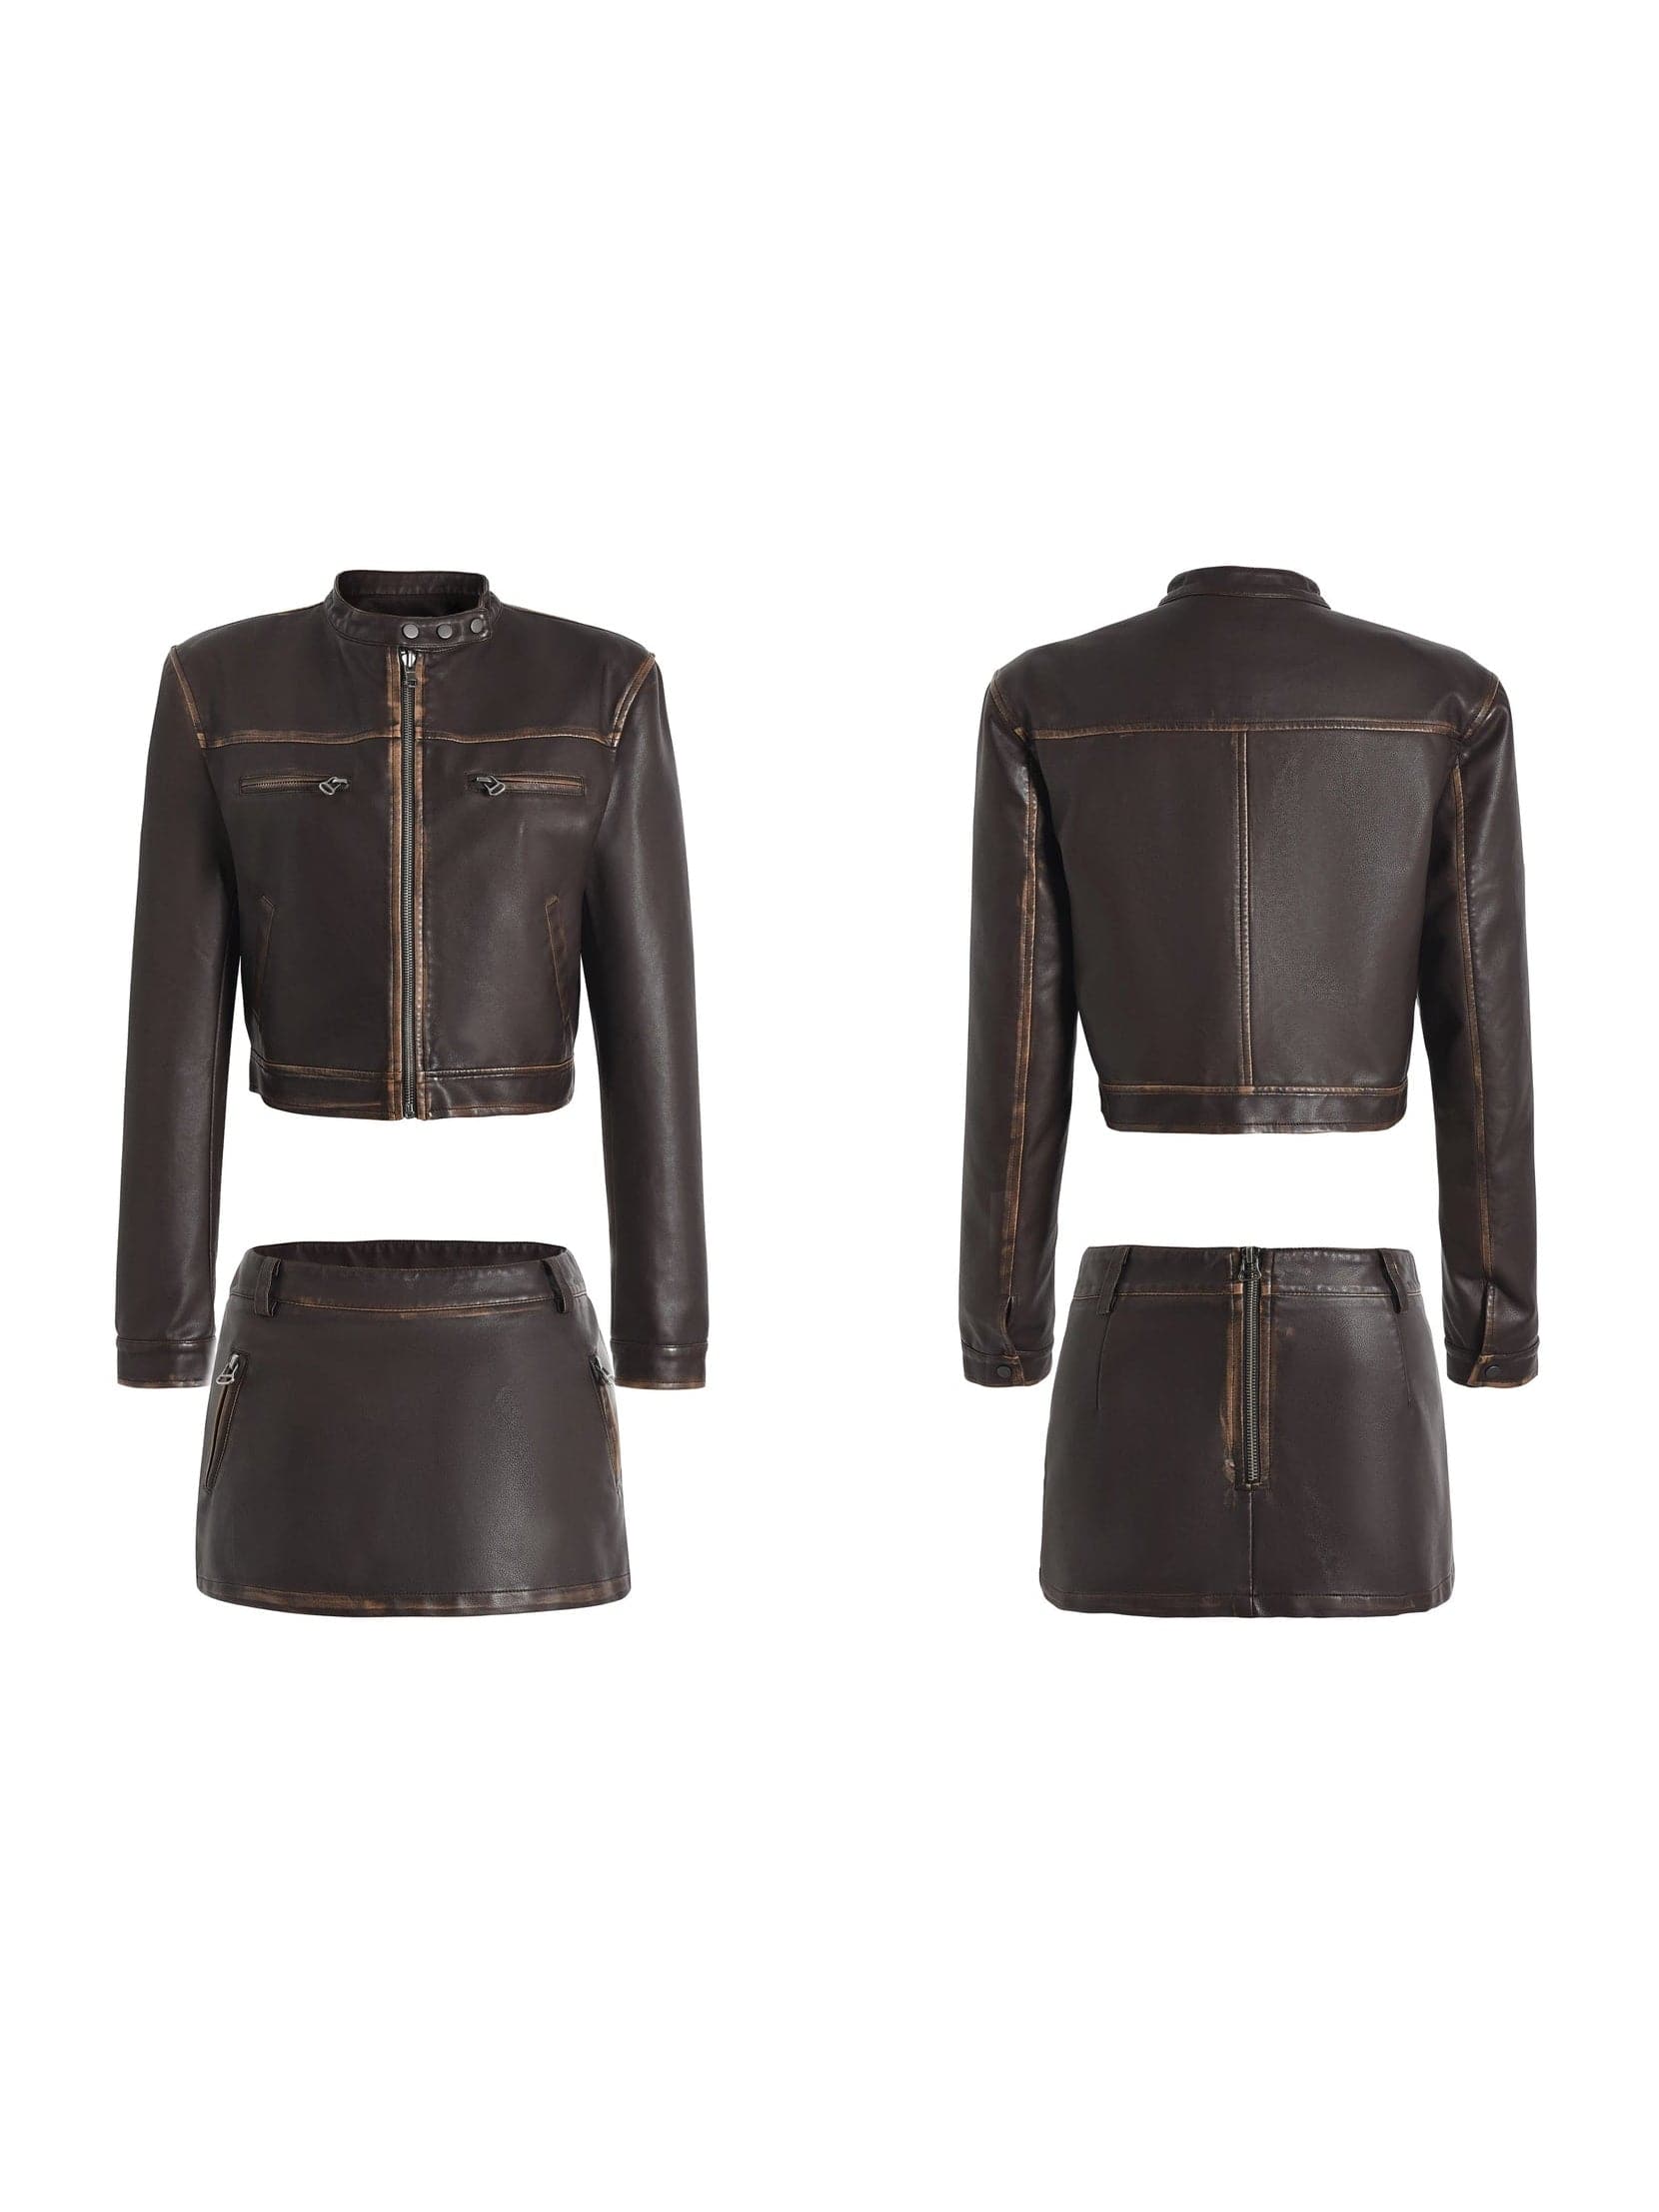 Vintage Leather Jacket & Micro Mini Skirt - chiclara